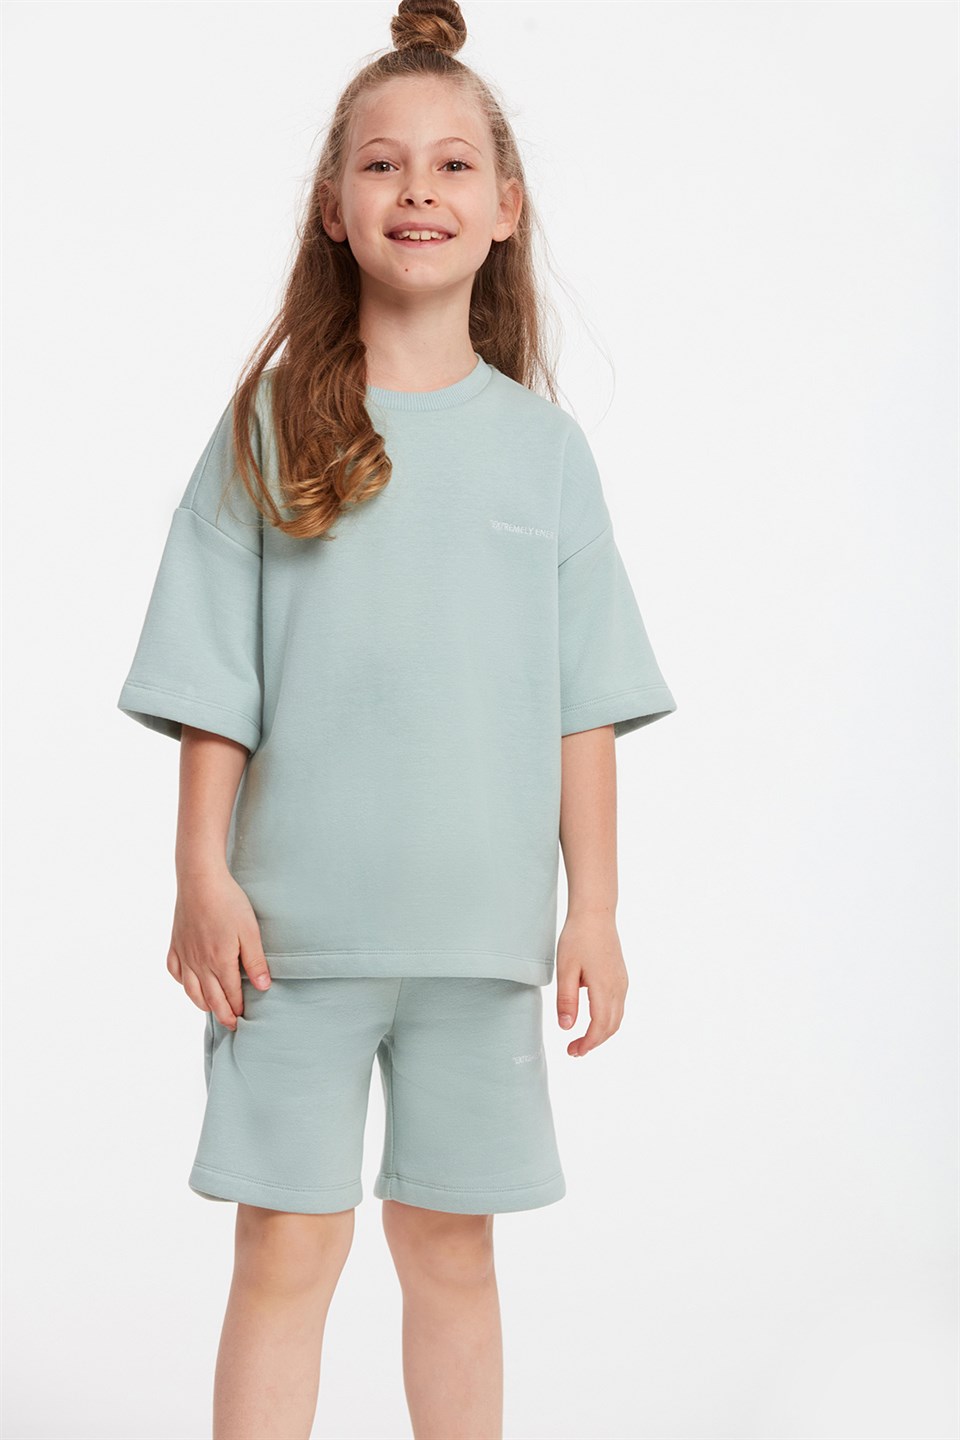 CALI Çocuk Mint Yeşili Nakışlı-İşlemeli Yuvarlak Yaka Comfort Fit Eşofman Takımı